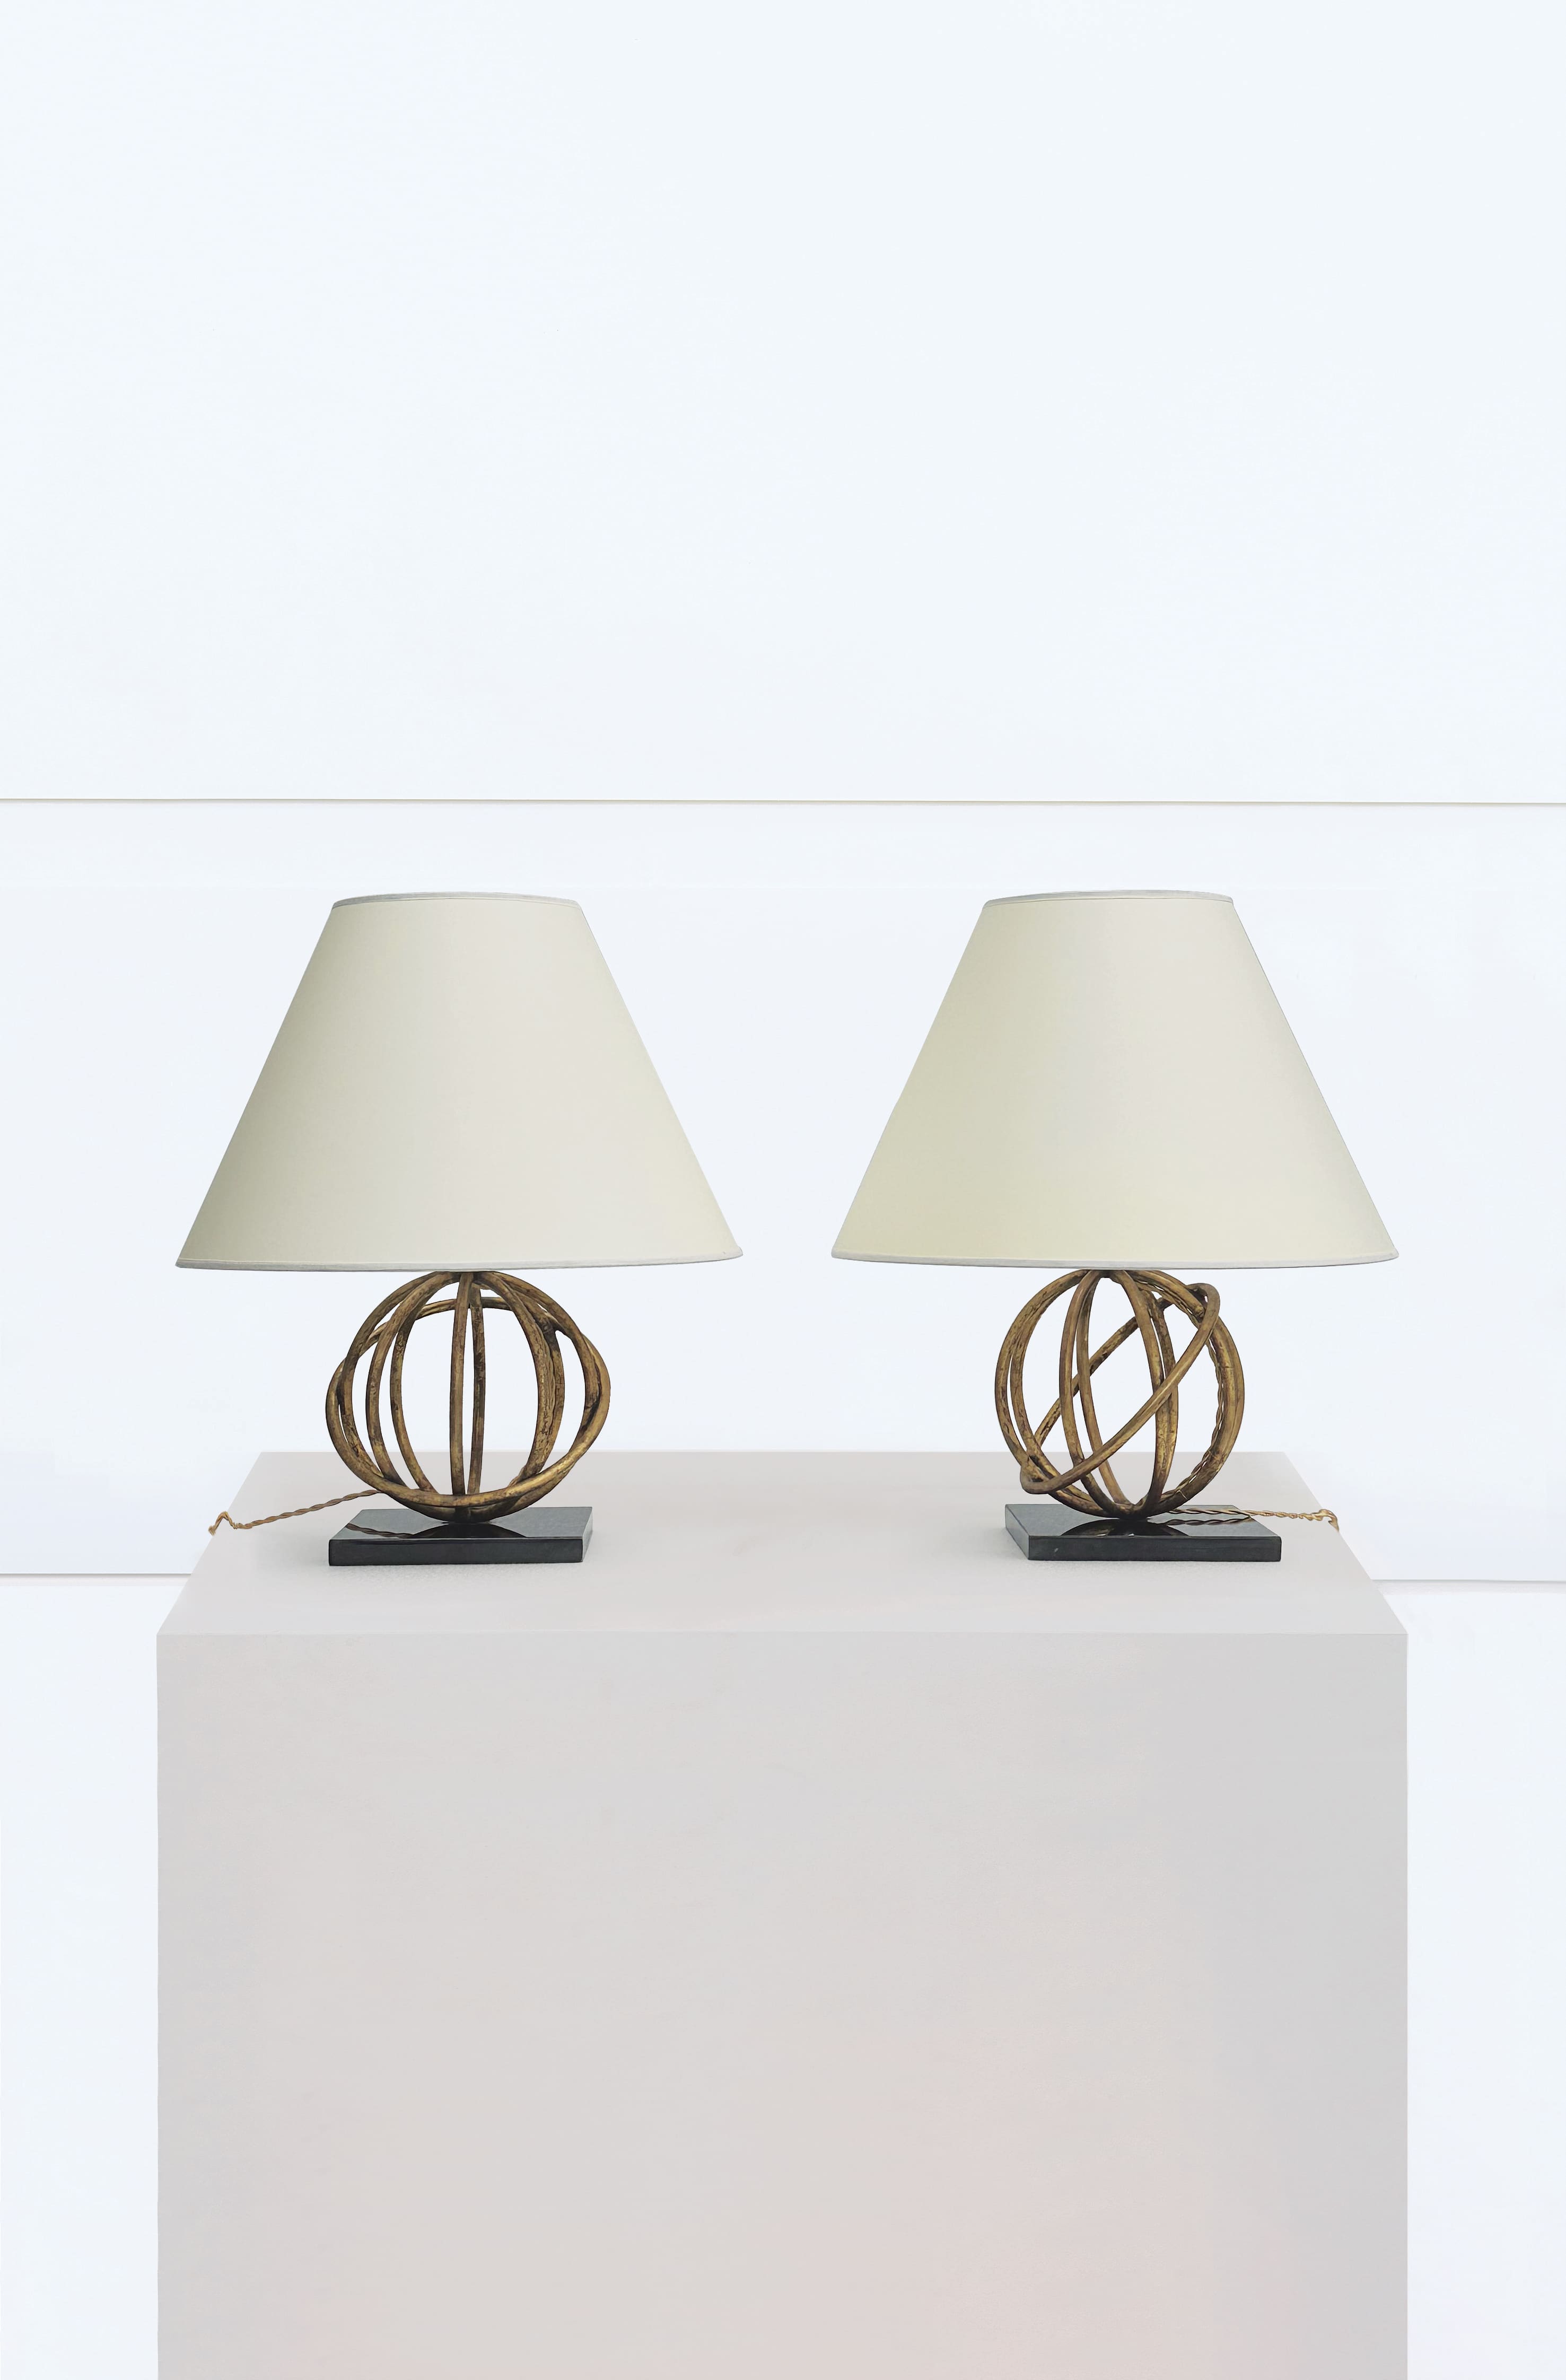 Jean Royère, pair of “Sphère” lamps, vue 01